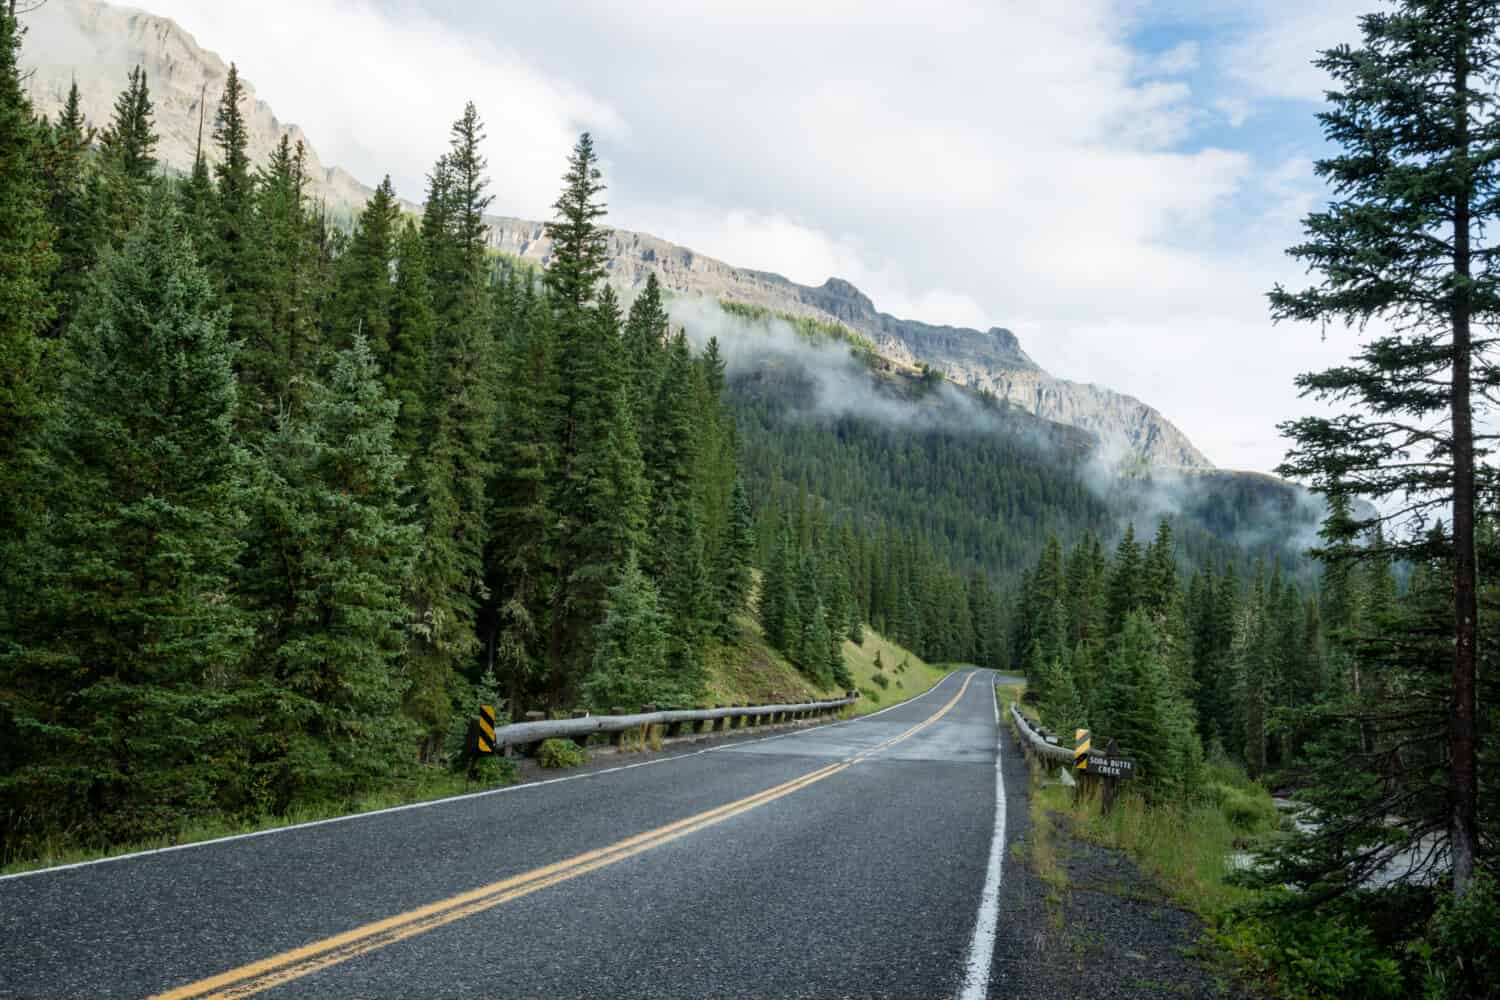 Autostrada Beartooth attraverso il Wyoming, Montana.  Il viaggio più panoramico degli Stati Uniti verso il Parco Nazionale di Yellowstone, circondato da una vegetazione lussureggiante e dalle cime delle montagne